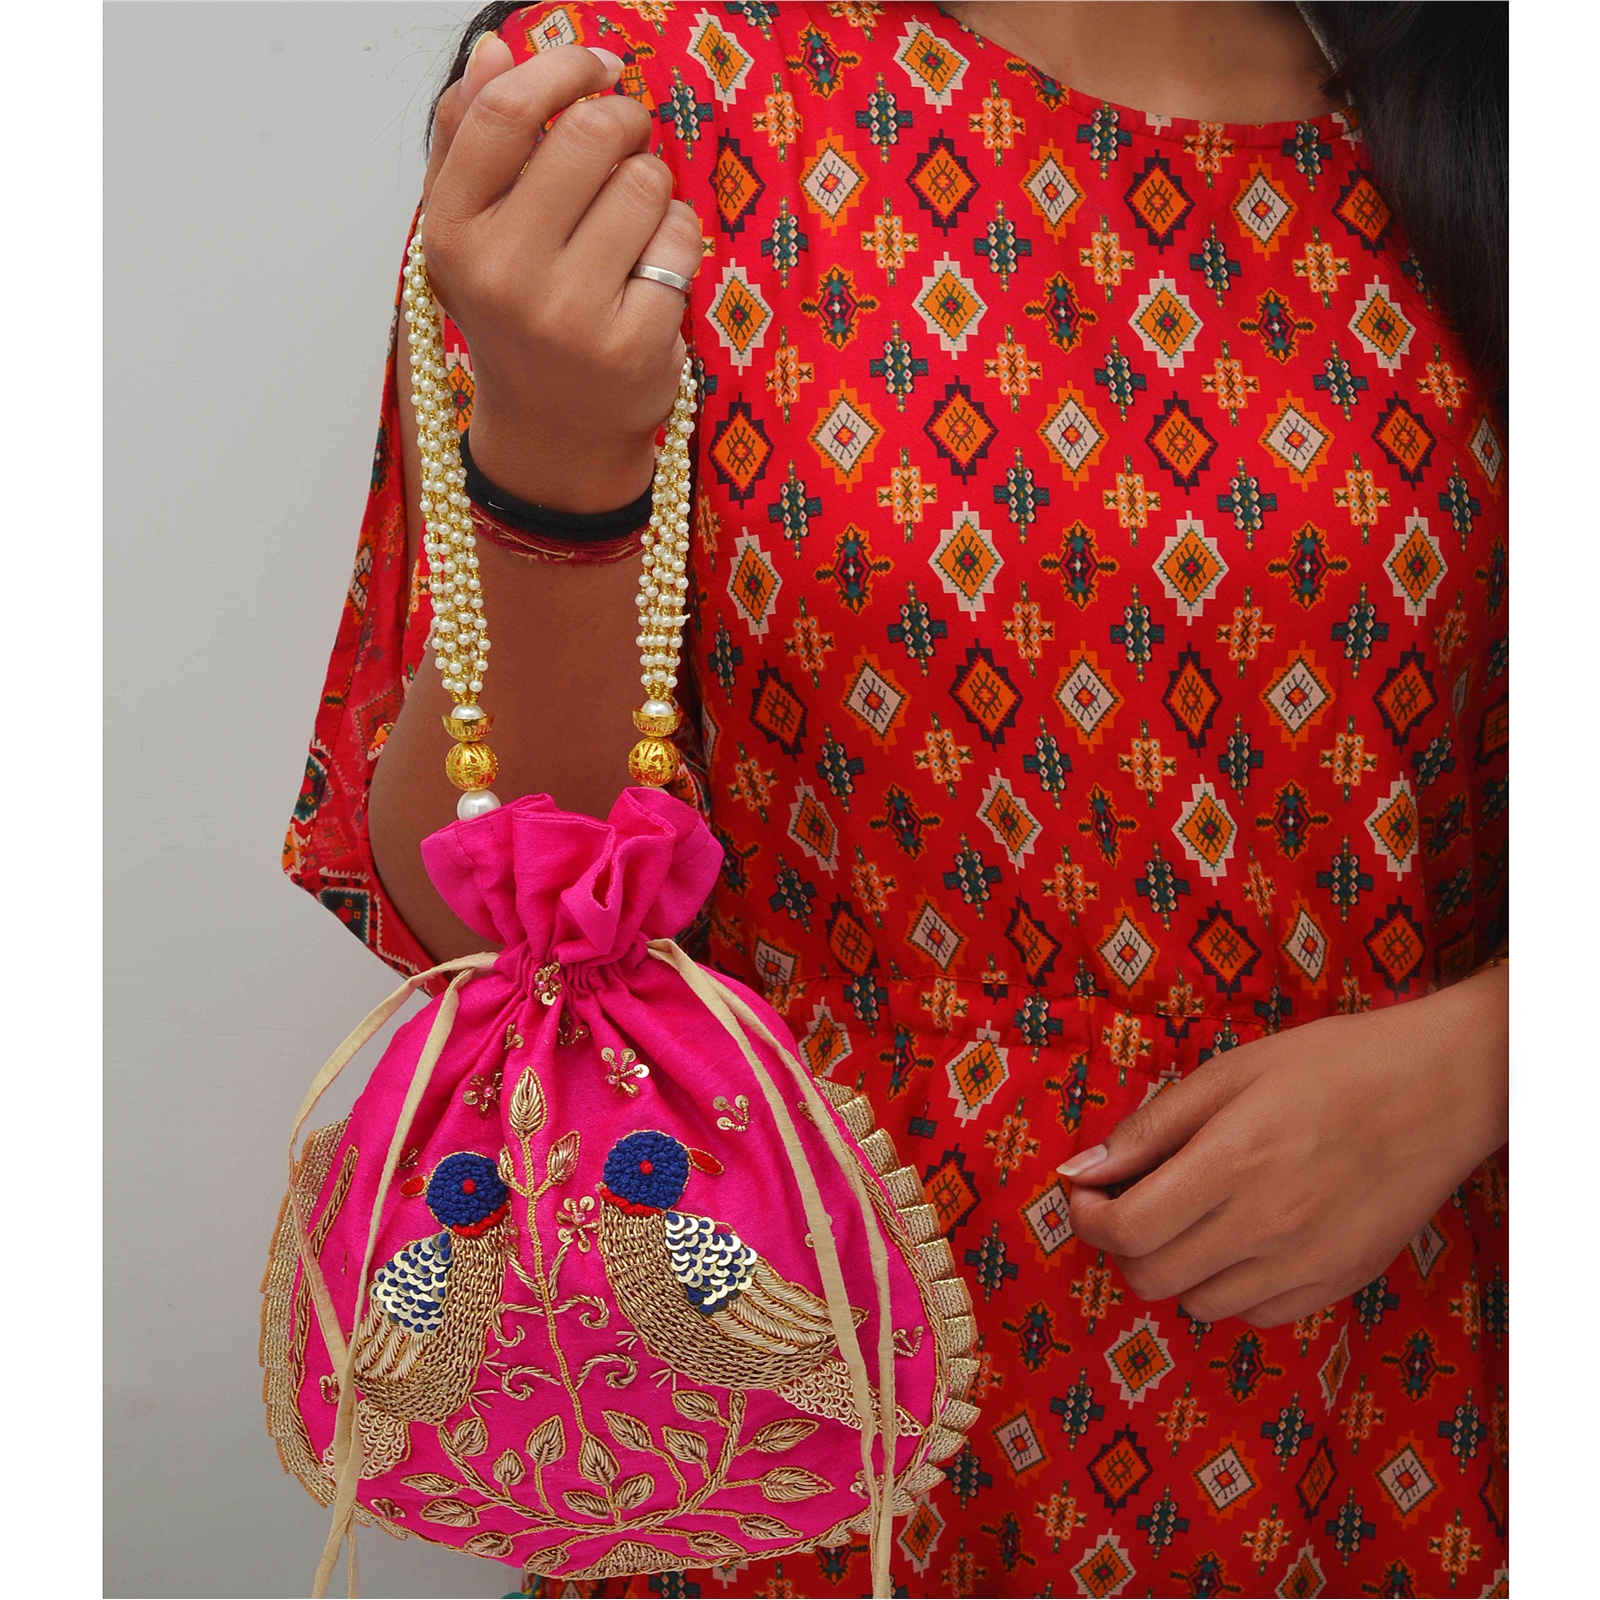 Sanskriti Indian Potli Bag Handmade Wedding Zardozi Drawstring Purse 11 ...